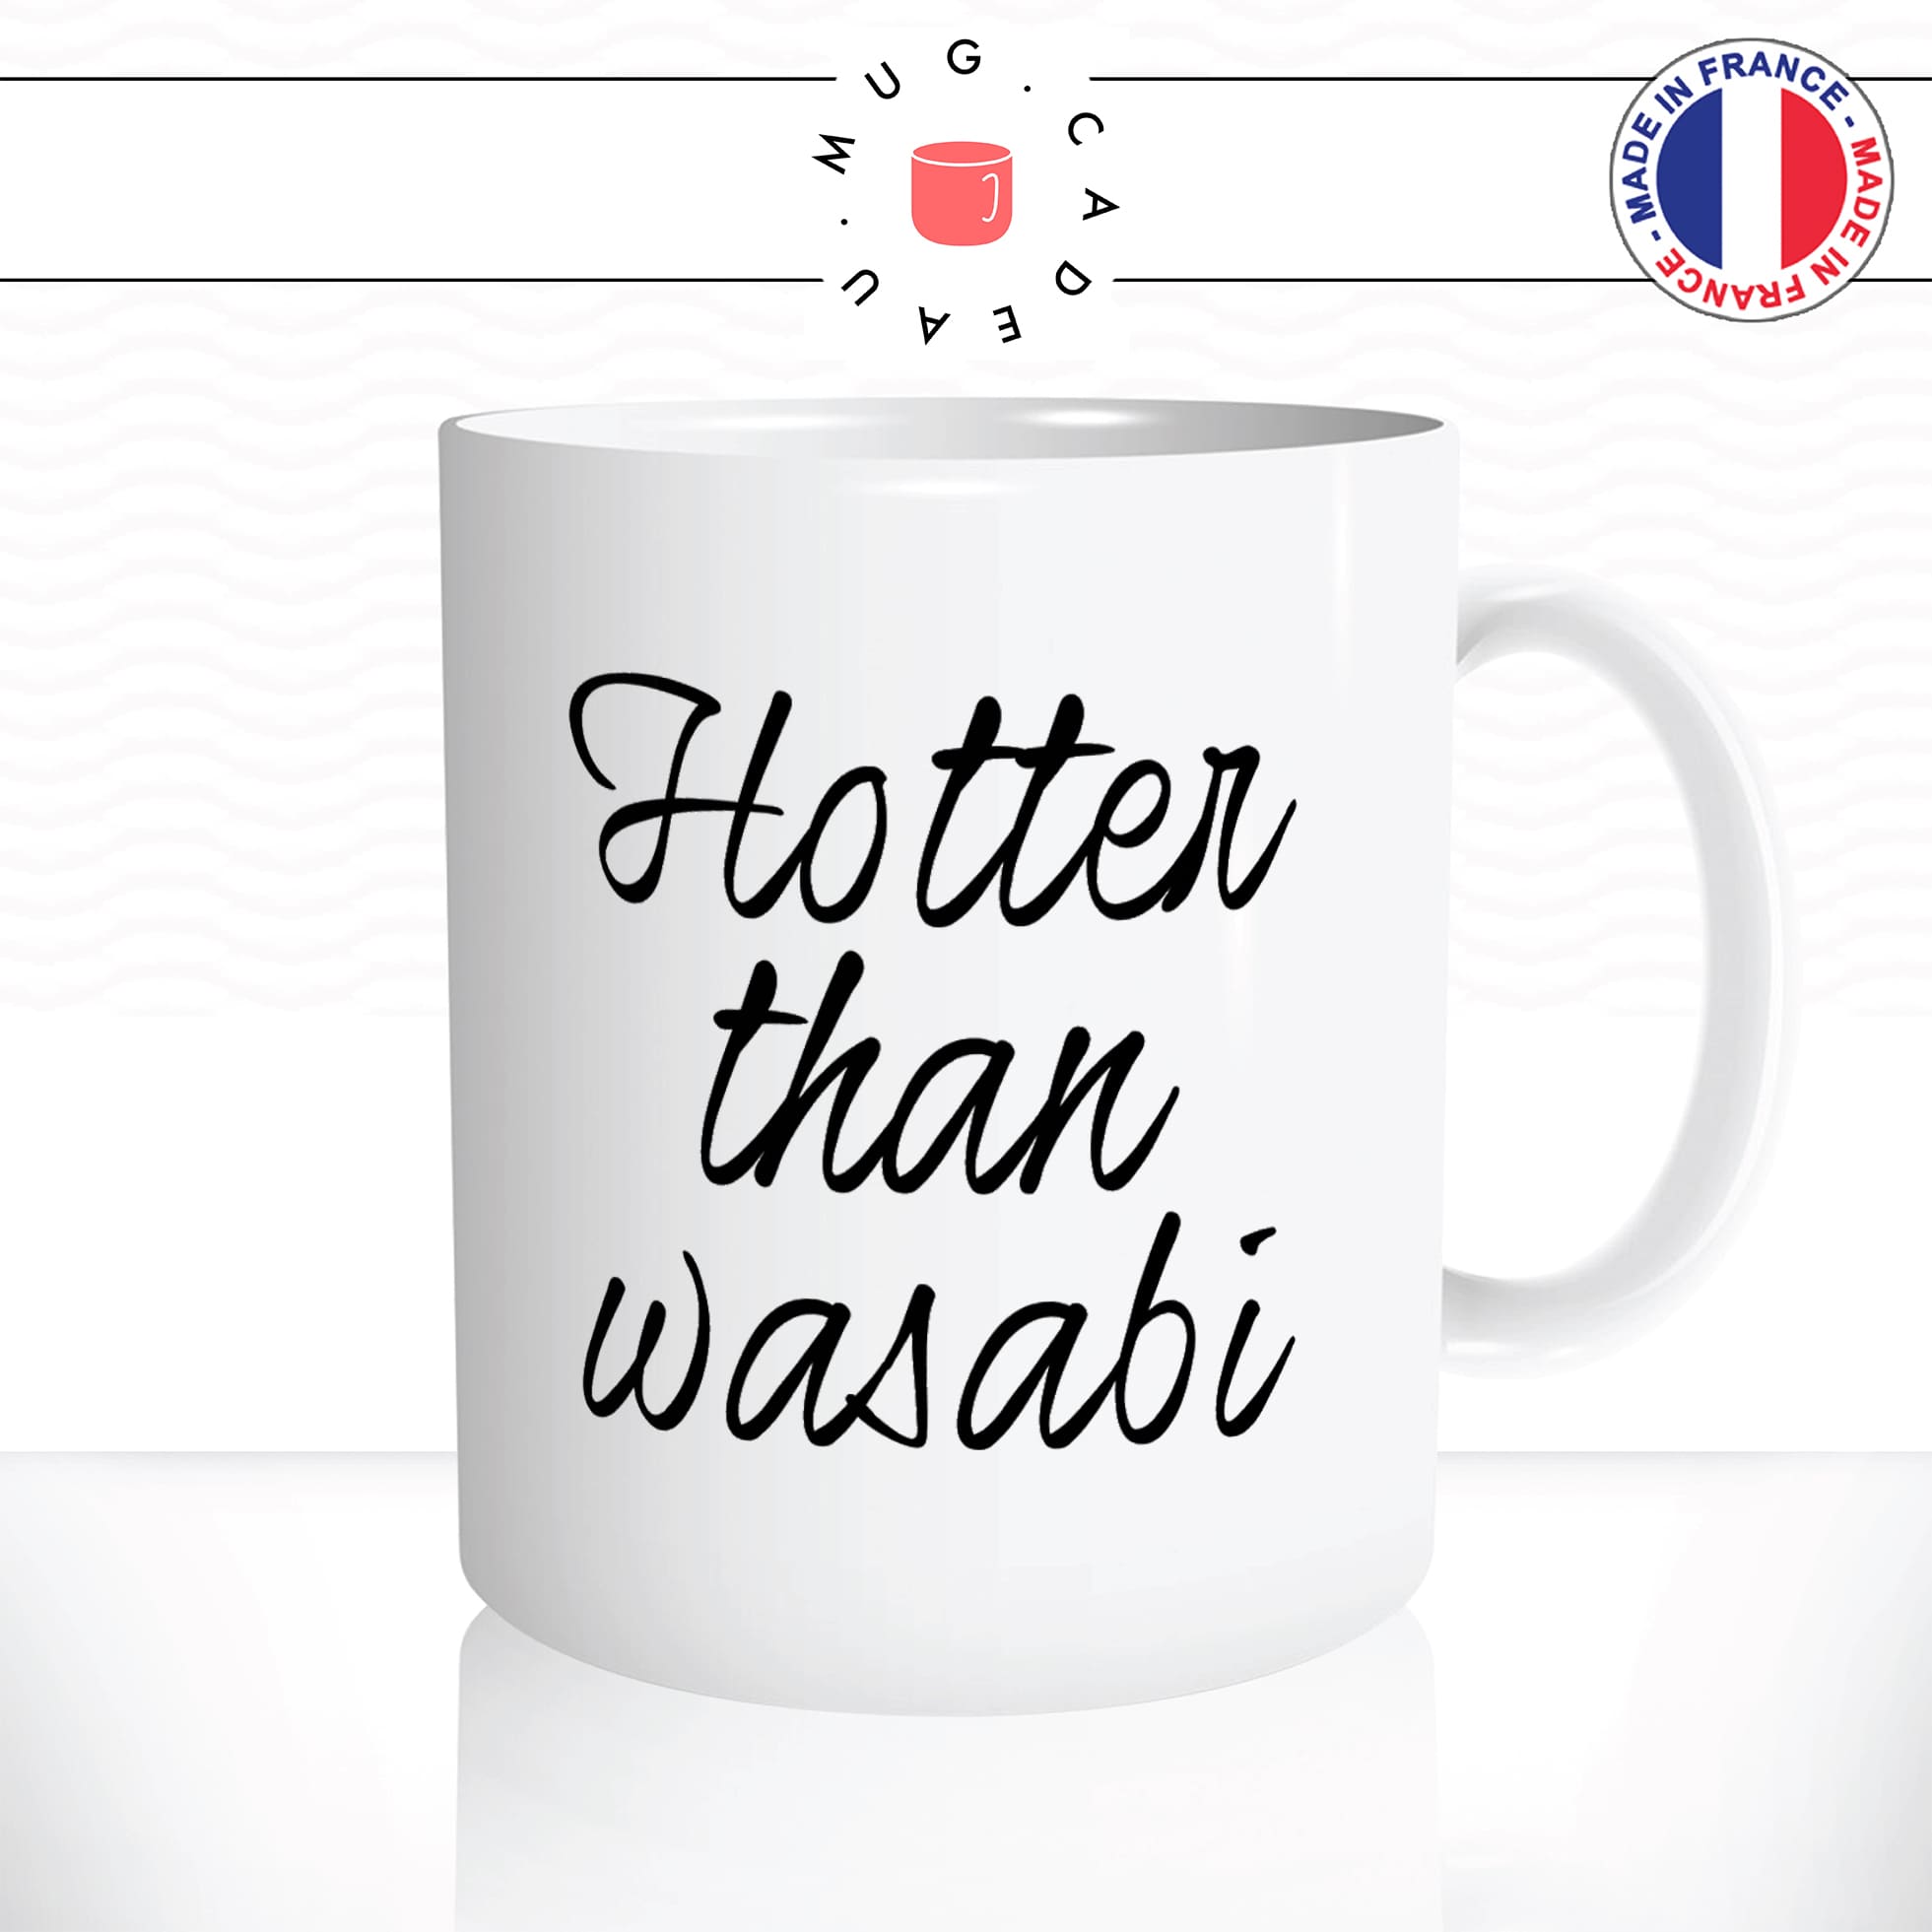 mug-tasse-blanc-unique-hotter-than-wasabi-plus-chaude-piment-sexy-homme-femme-humour-fun-cool-idée-cadeau-original2